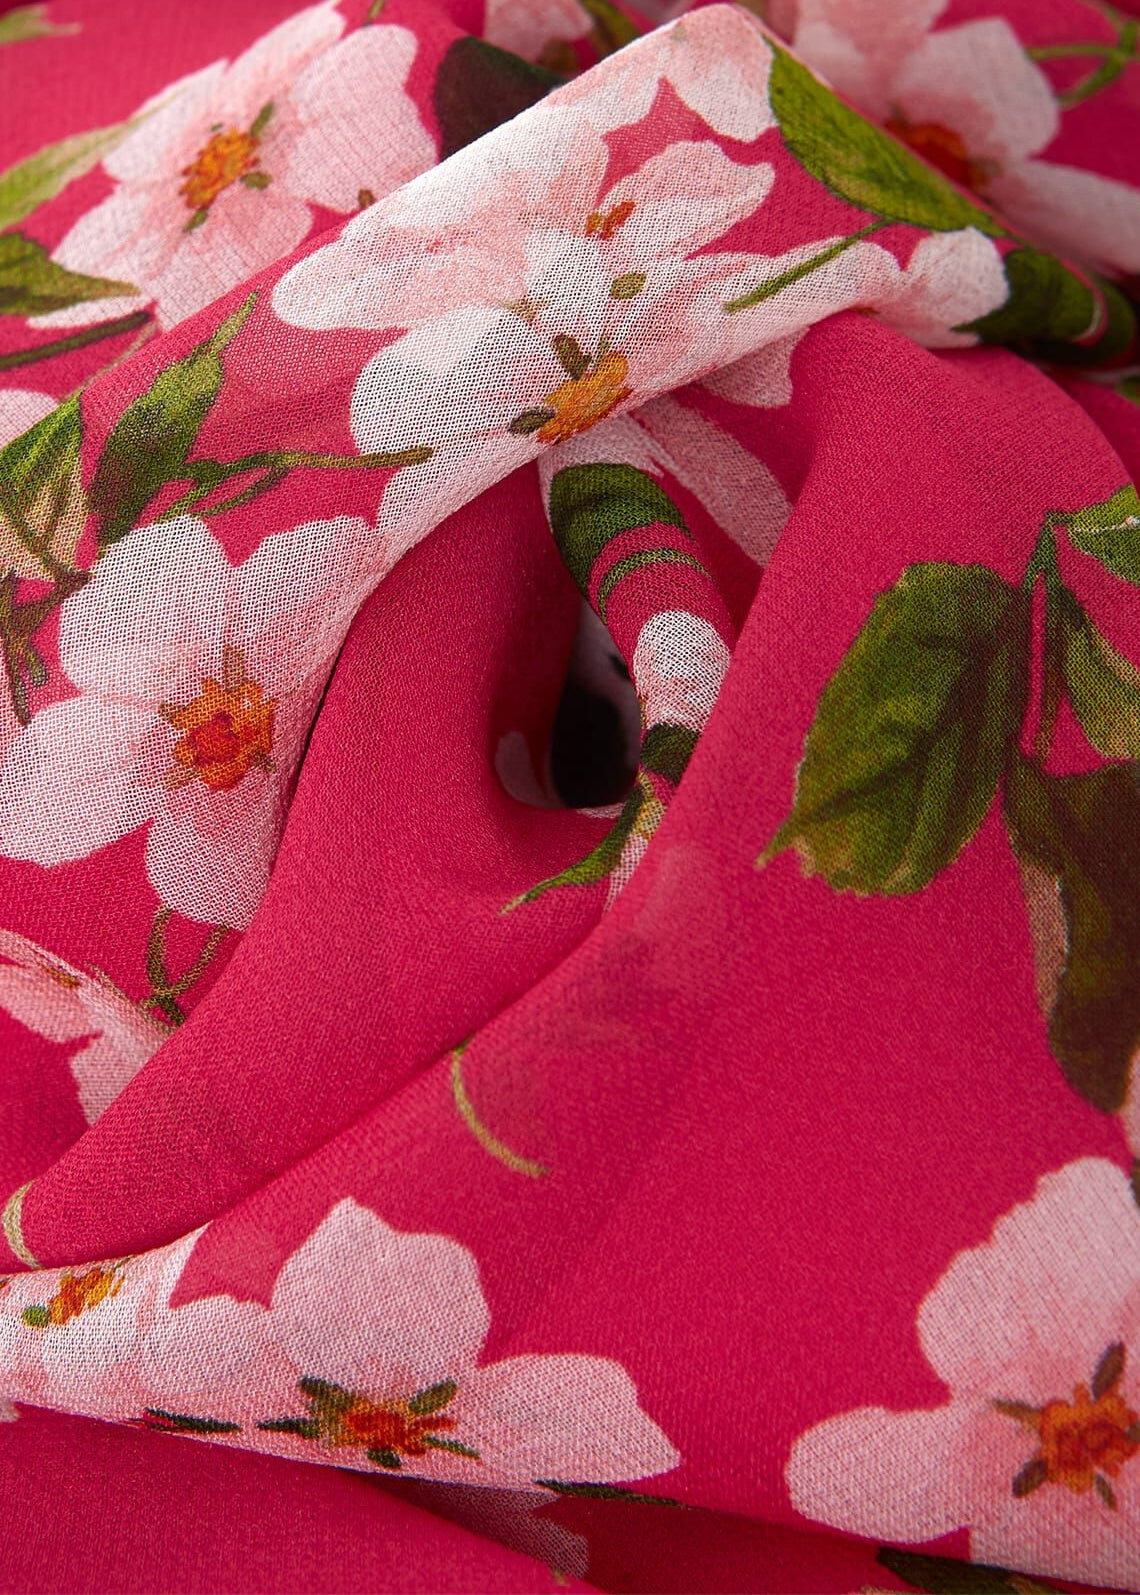 Helena Silk Dress 0123/5920/3793l00 Pink-Multi